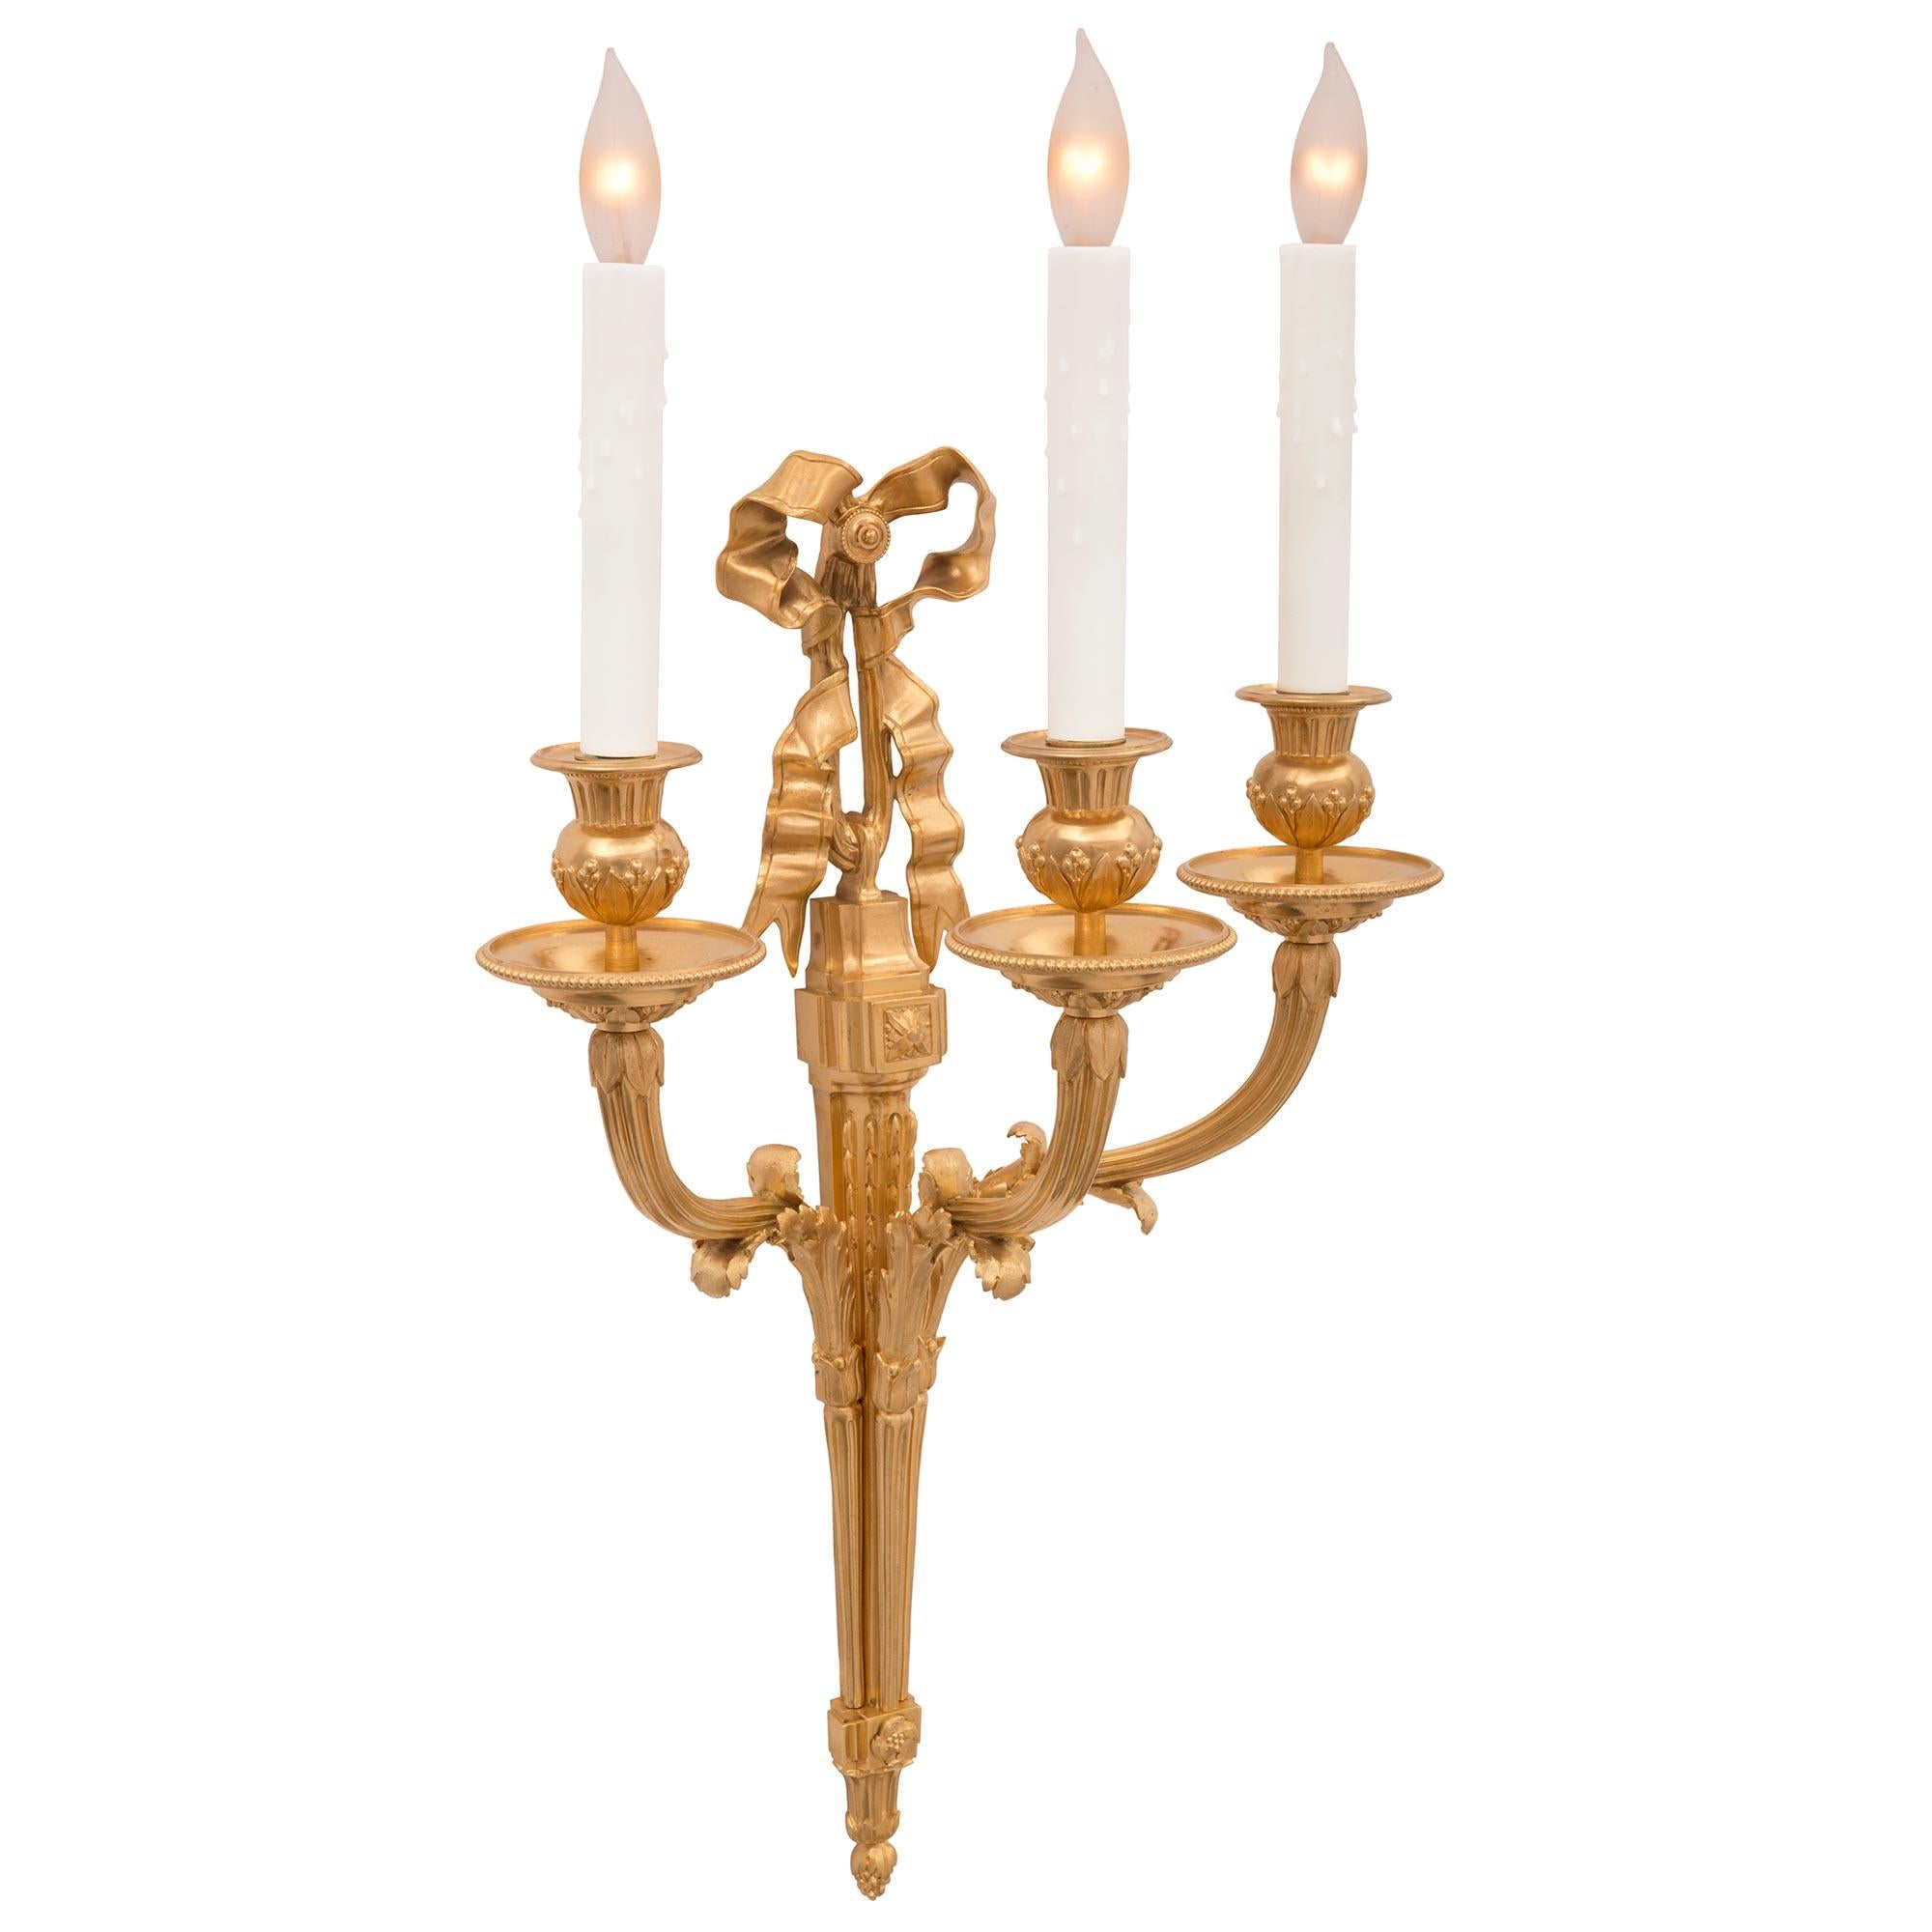 Ein elegantes Paar französischer Ormolu-Leuchter aus dem 19. Jahrhundert im Stil Louis XVI. Jede dreiarmige Leuchte wird von einer fein detaillierten Eichelspitze unter dem eleganten, konisch zulaufenden Korpus gekrönt. Die Oberseite der